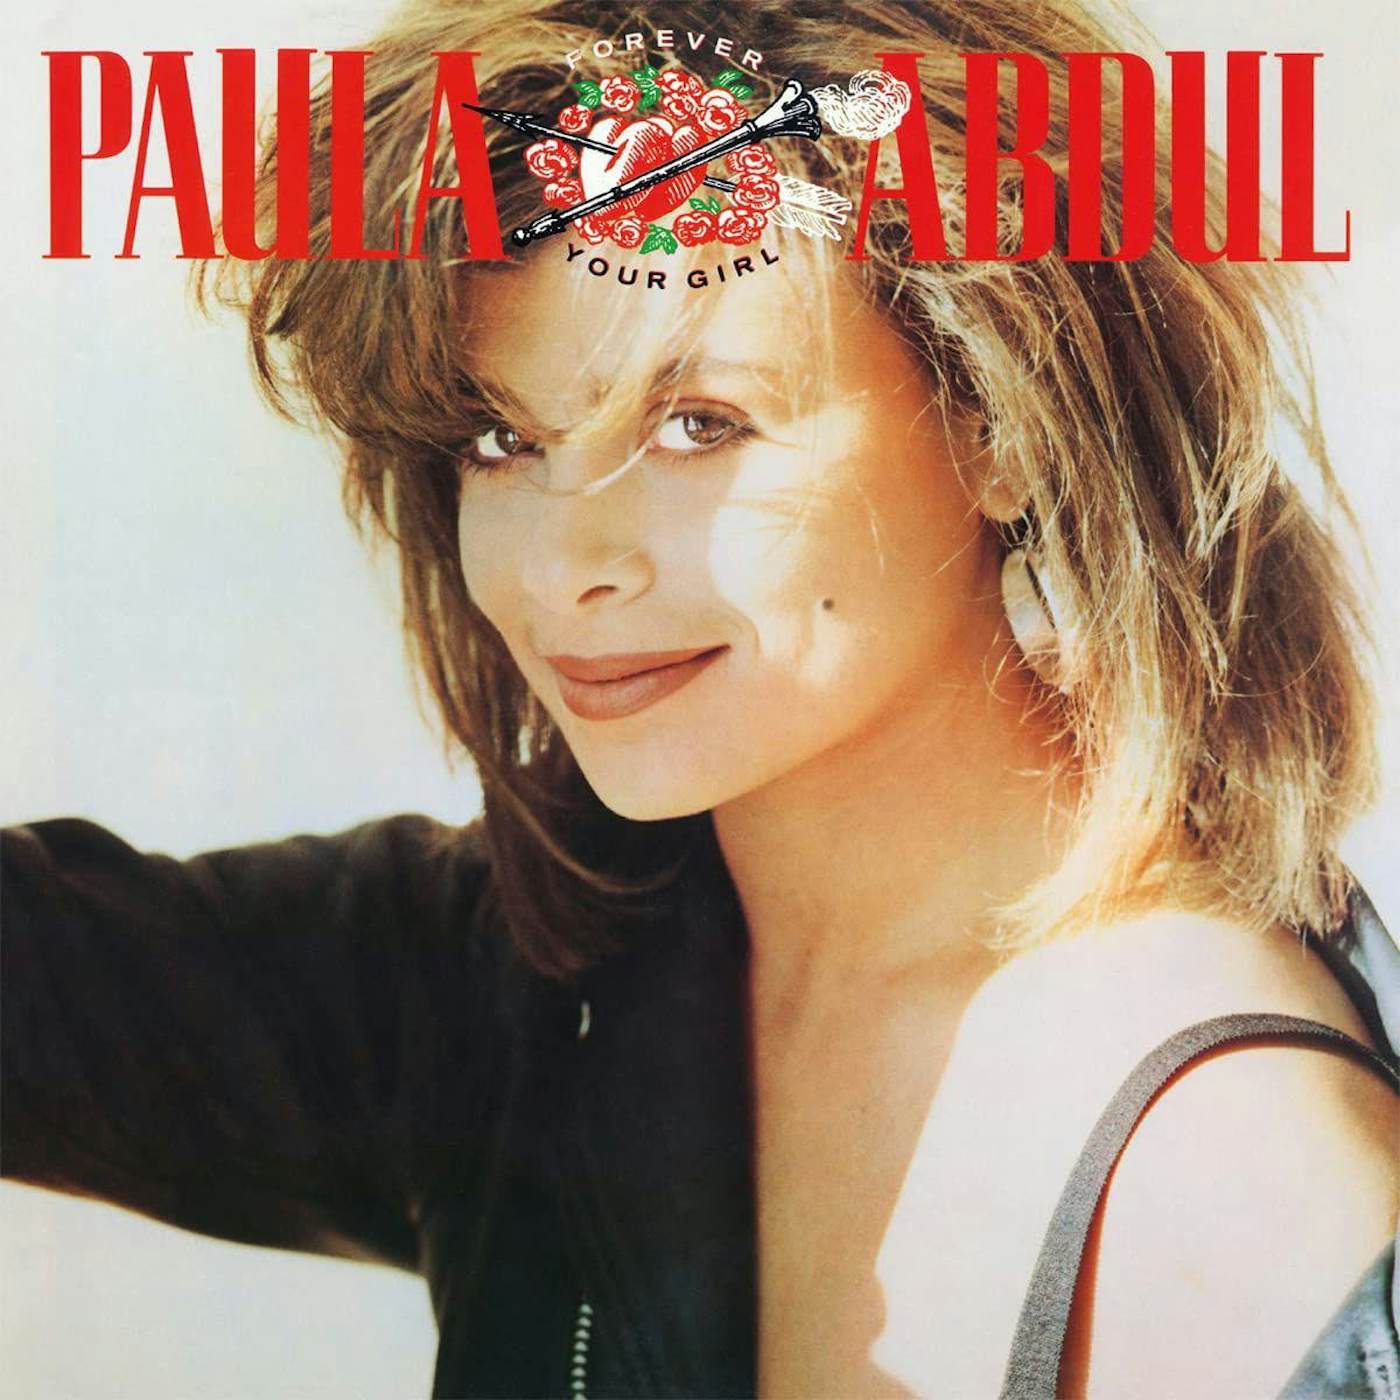 Paula Abdul Forever Your Girl (180g/Insert) Vinyl Record